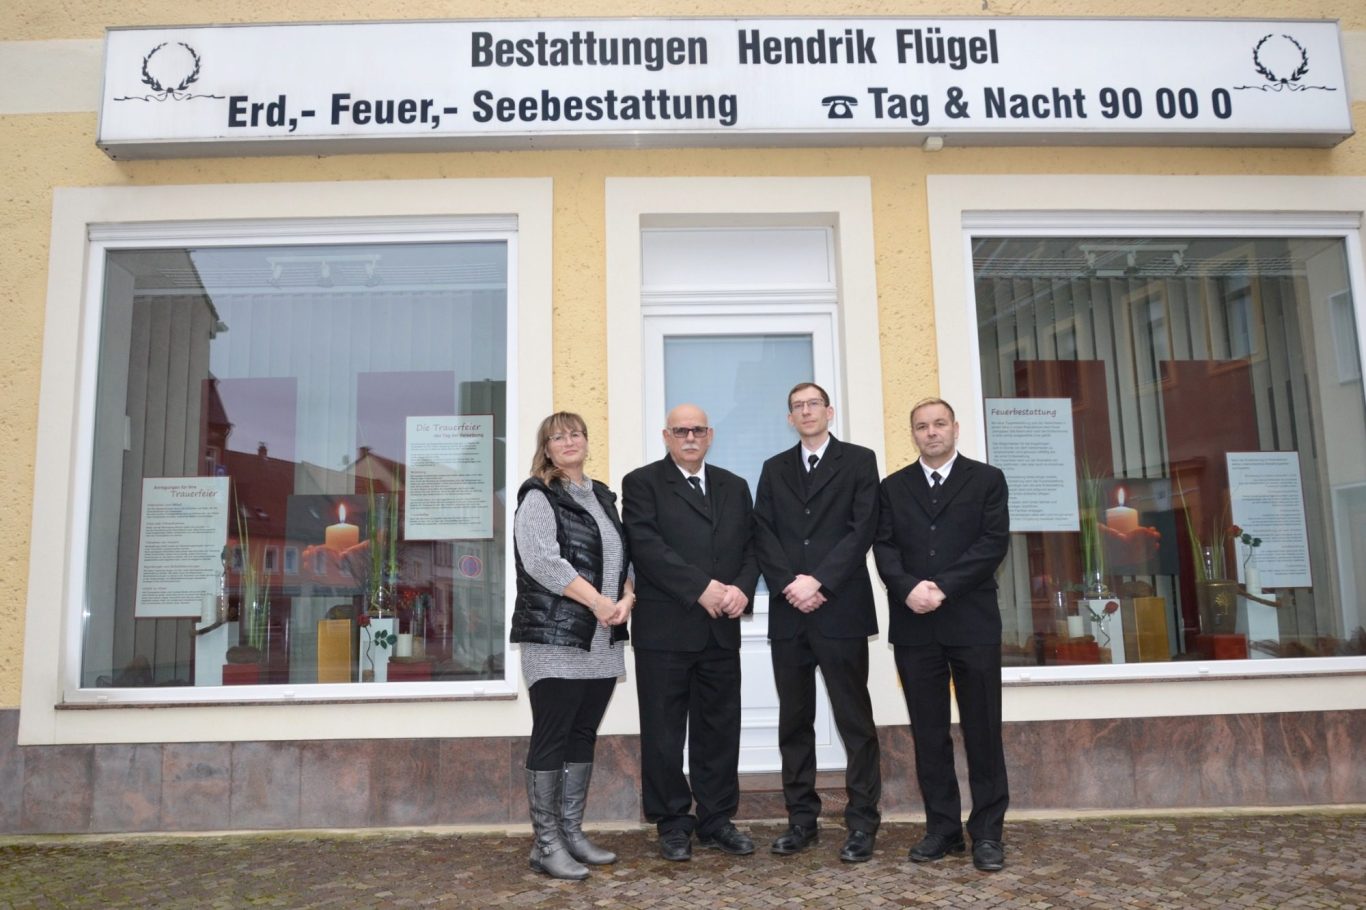 Teamfoto Bestattungen Hendrik Flügel in Wurzen